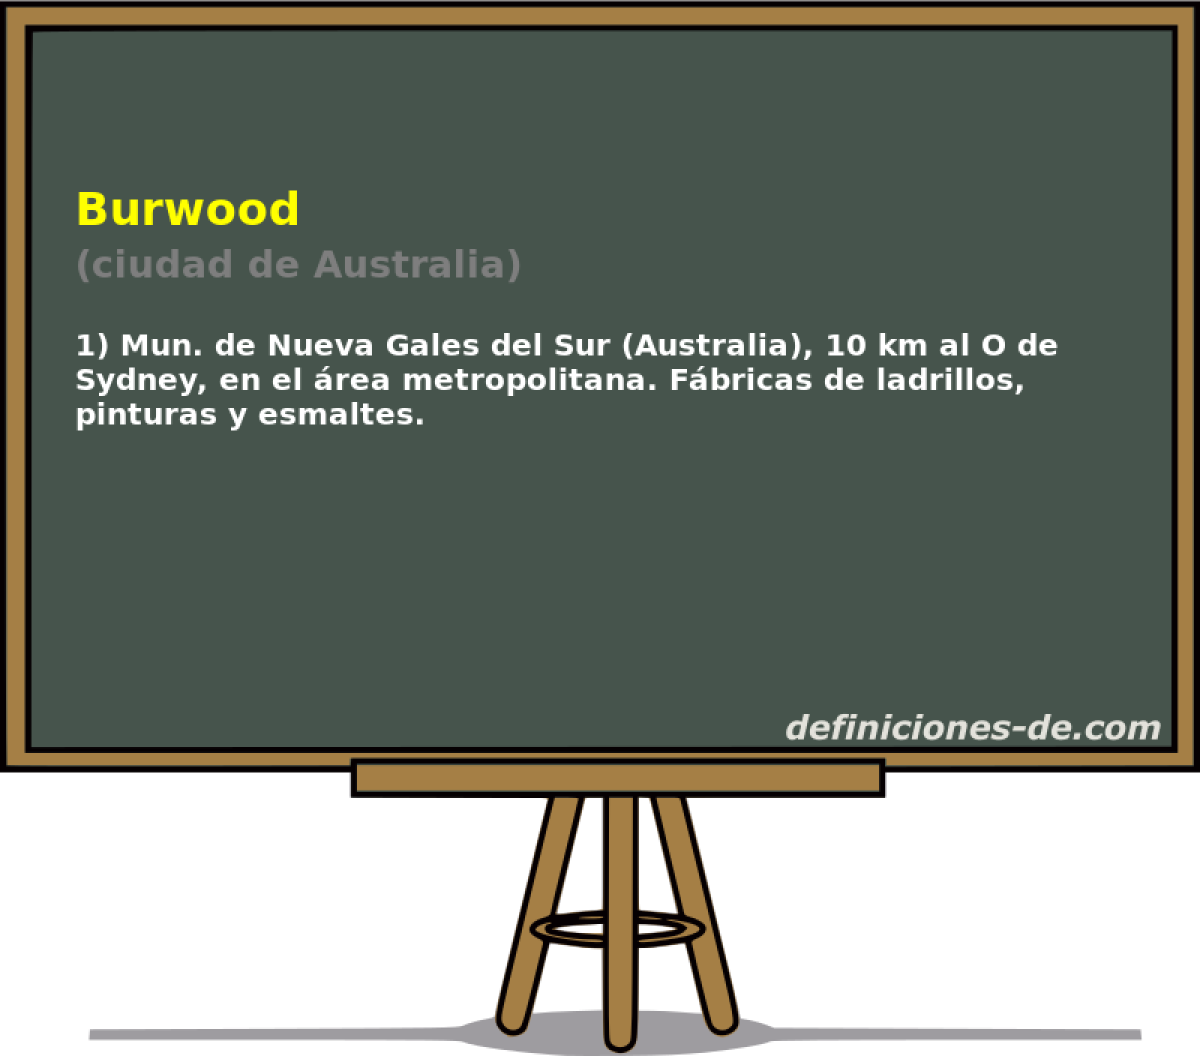 Burwood (ciudad de Australia)